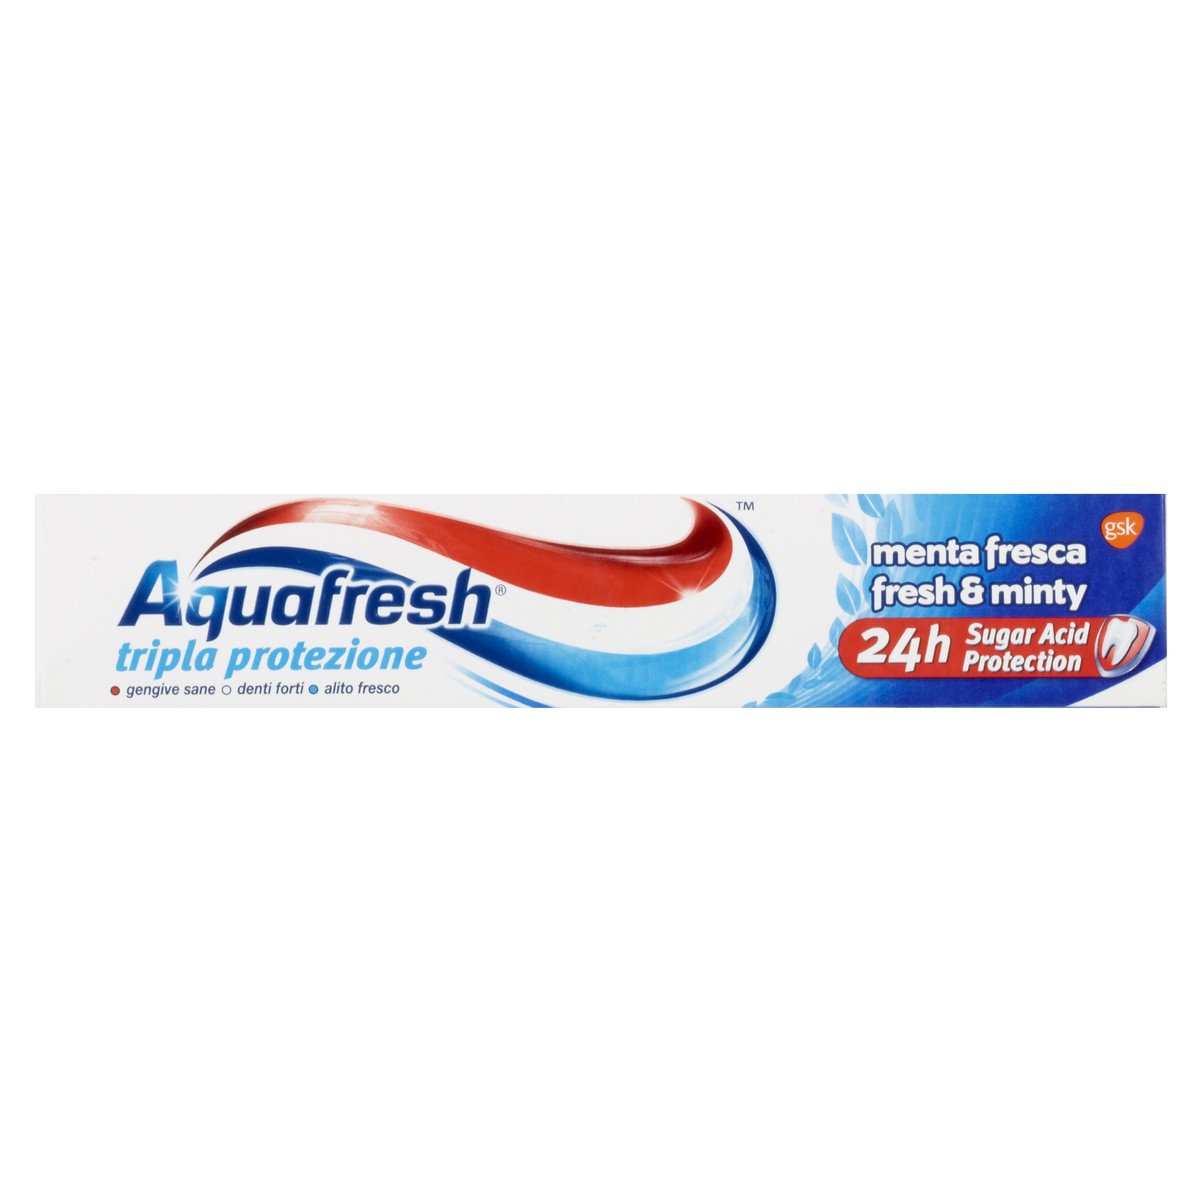 Aquafresh Dentifricio Tripla Protezione